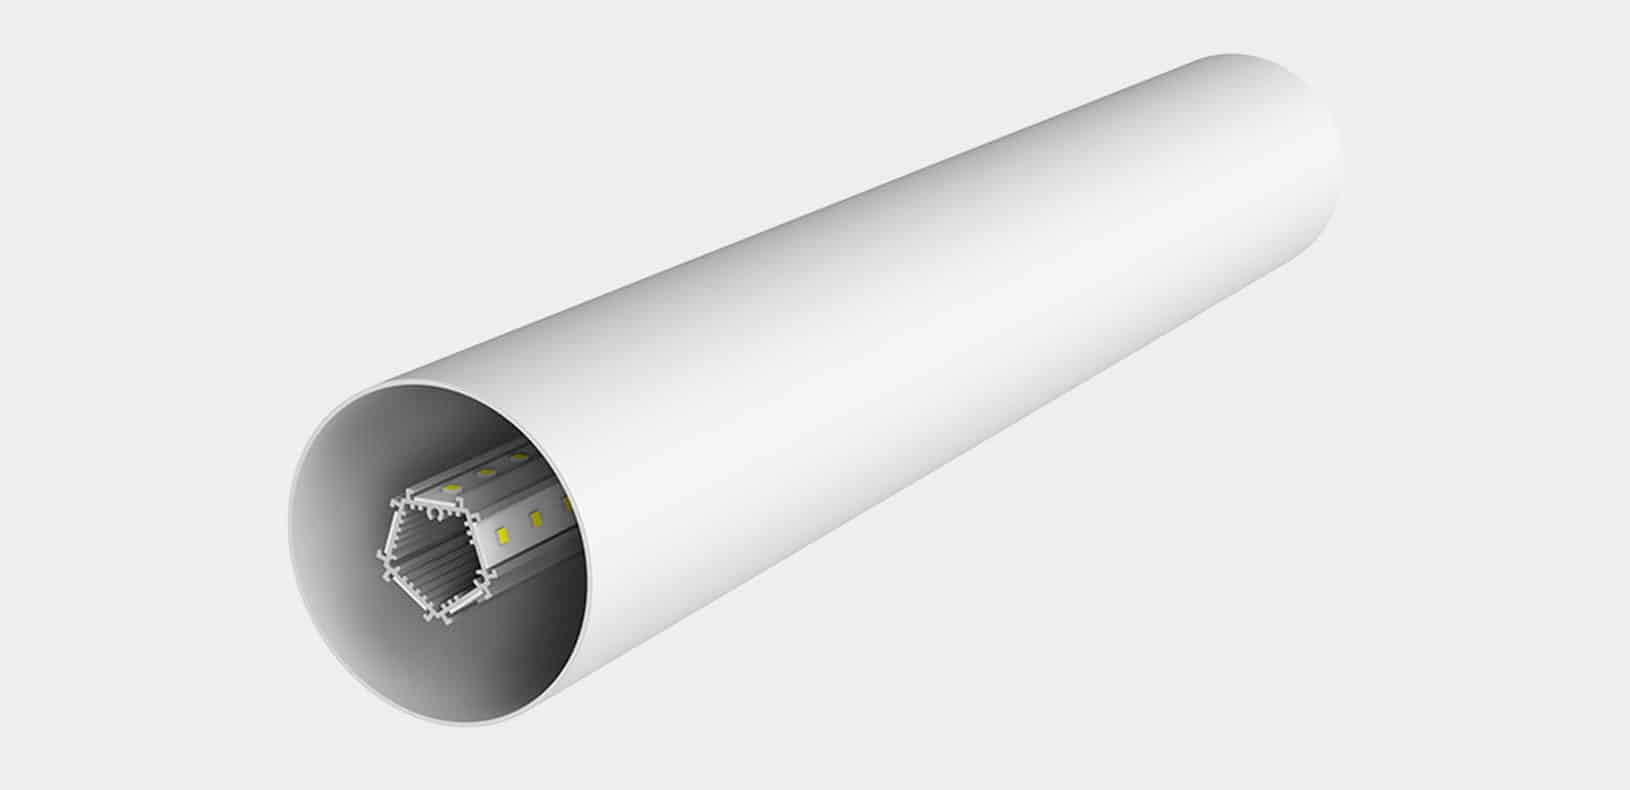 LED Aluminium Profile - Tubular LED Profiles - LO7676